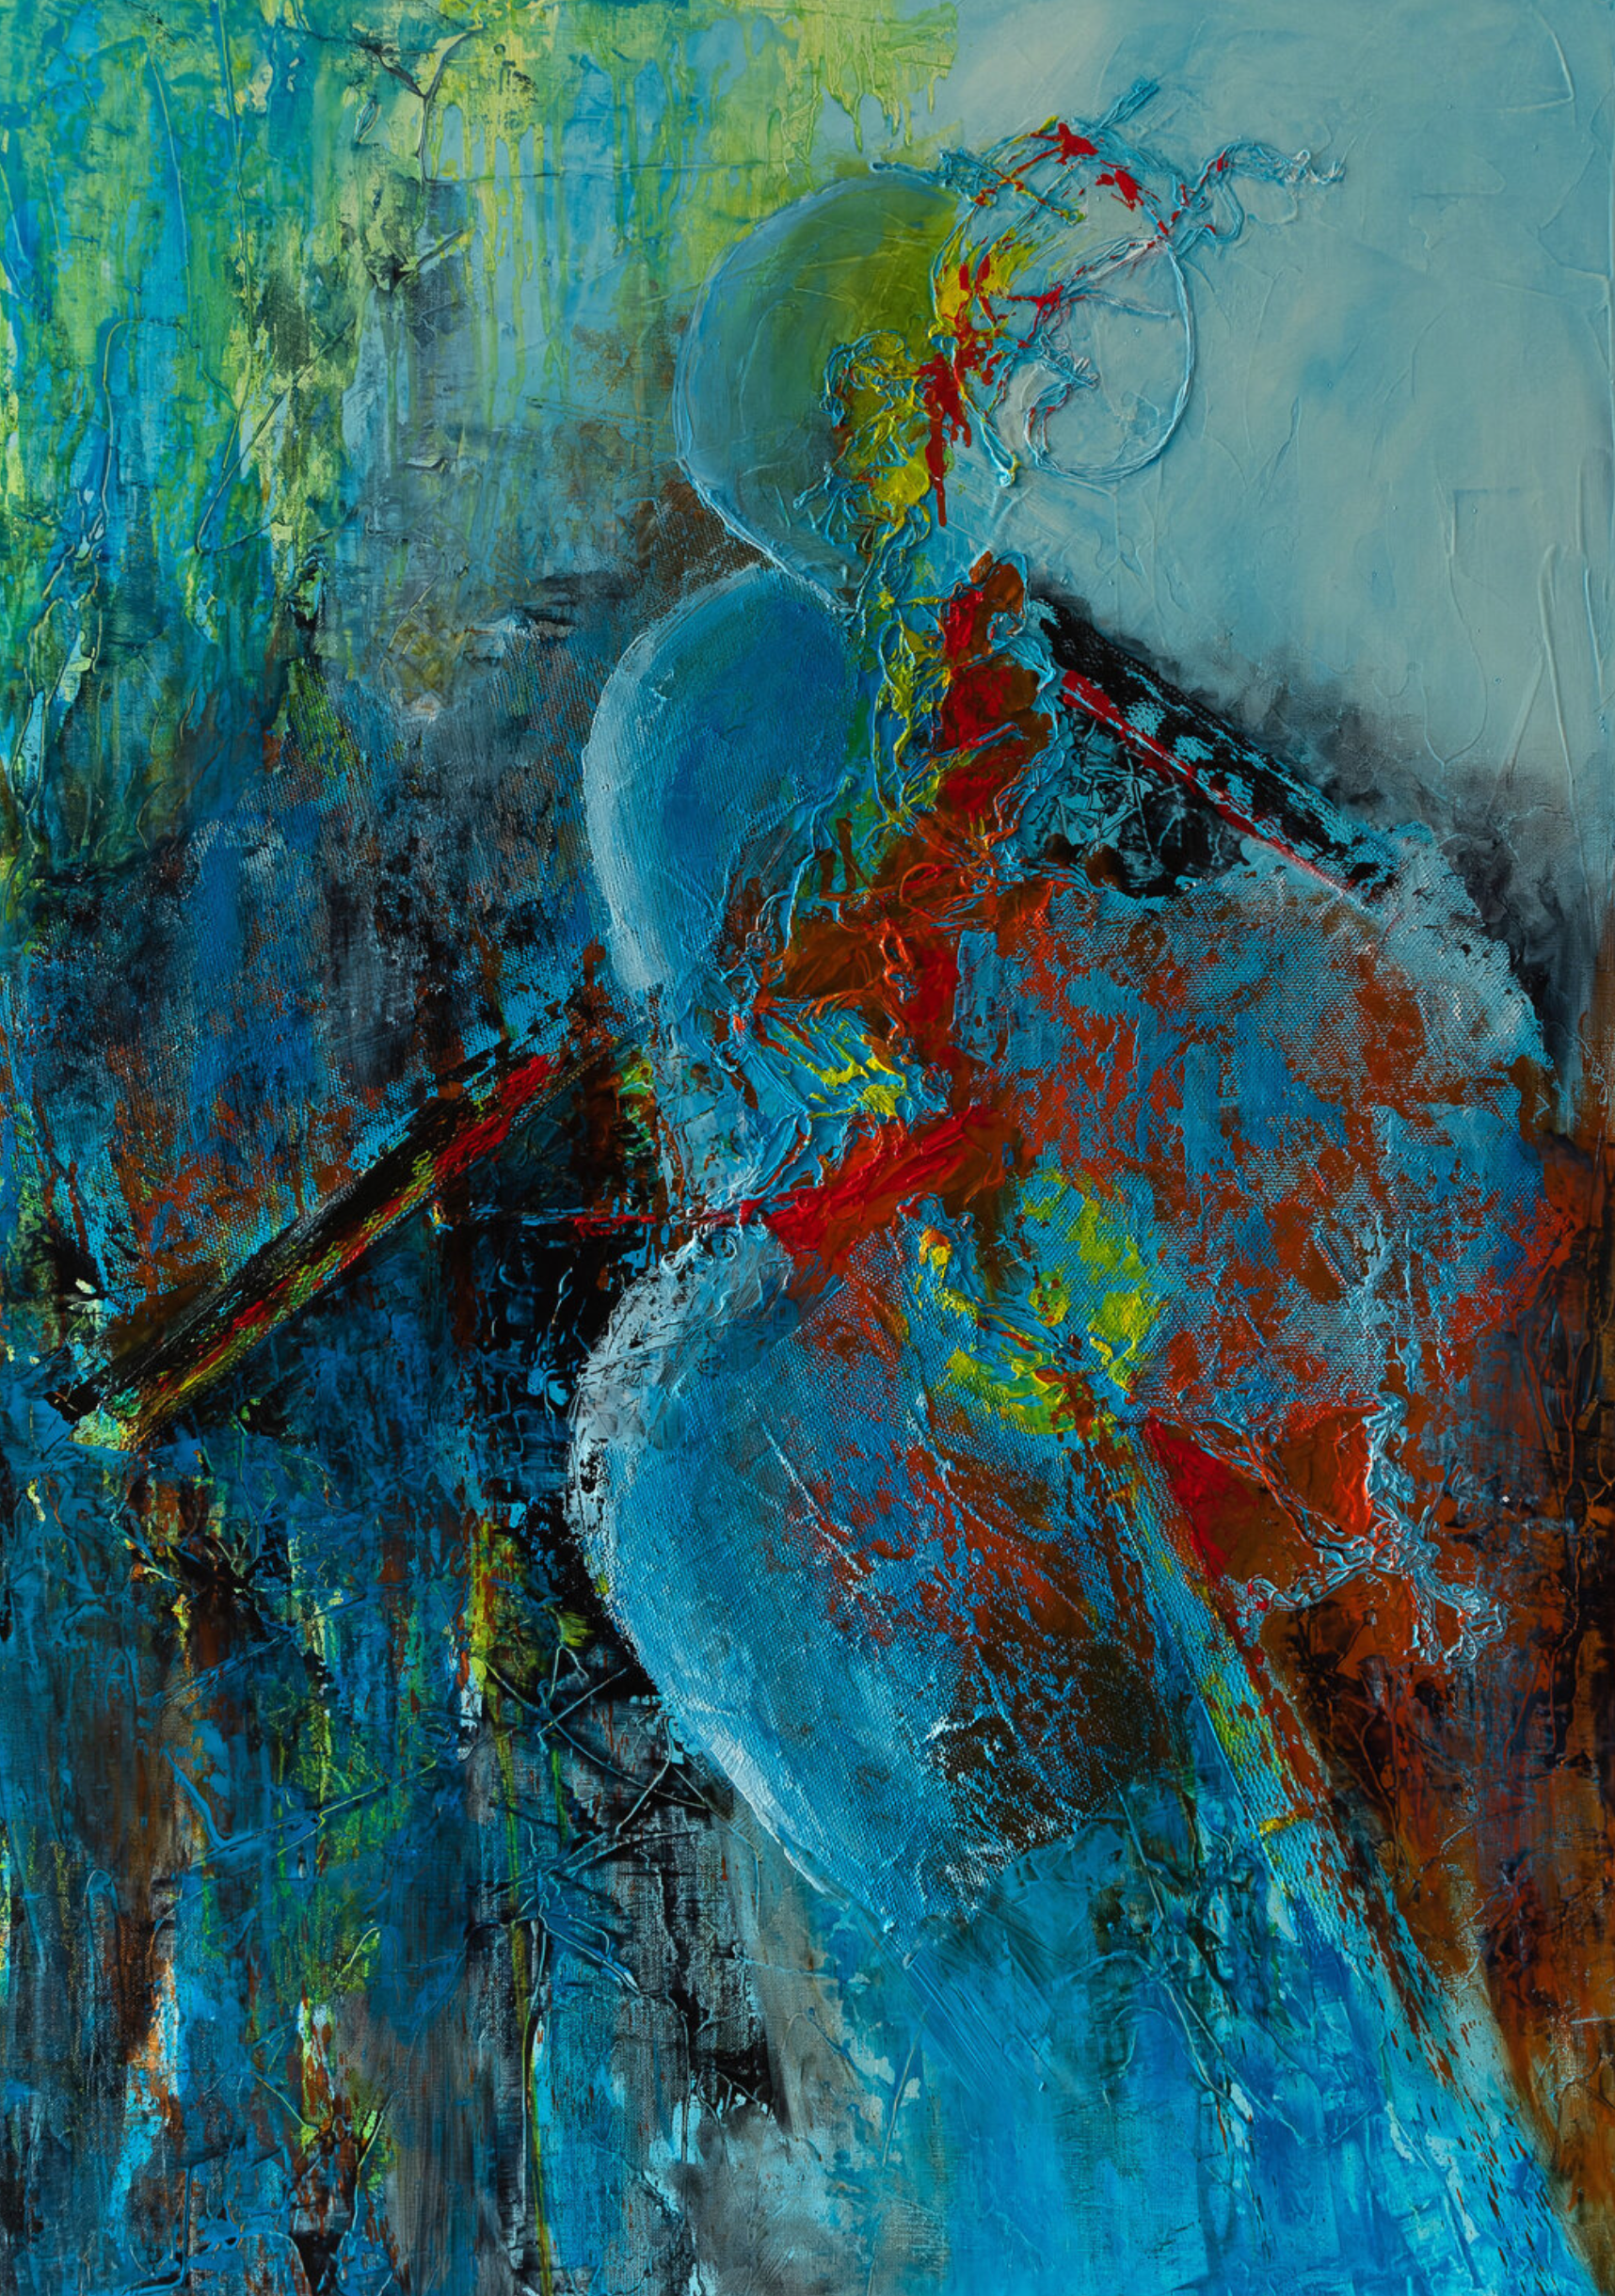 La peinture abstraite "Salomé" de Françoise Dugourd-Caput montre Au cœur d'un mouvement bleuté et orangé, une vague silhouette féminine, à peine esquissée, joue avec les formes et les matières et donne à l'ensemble abstrait cette touche d'élégance et de sensualité